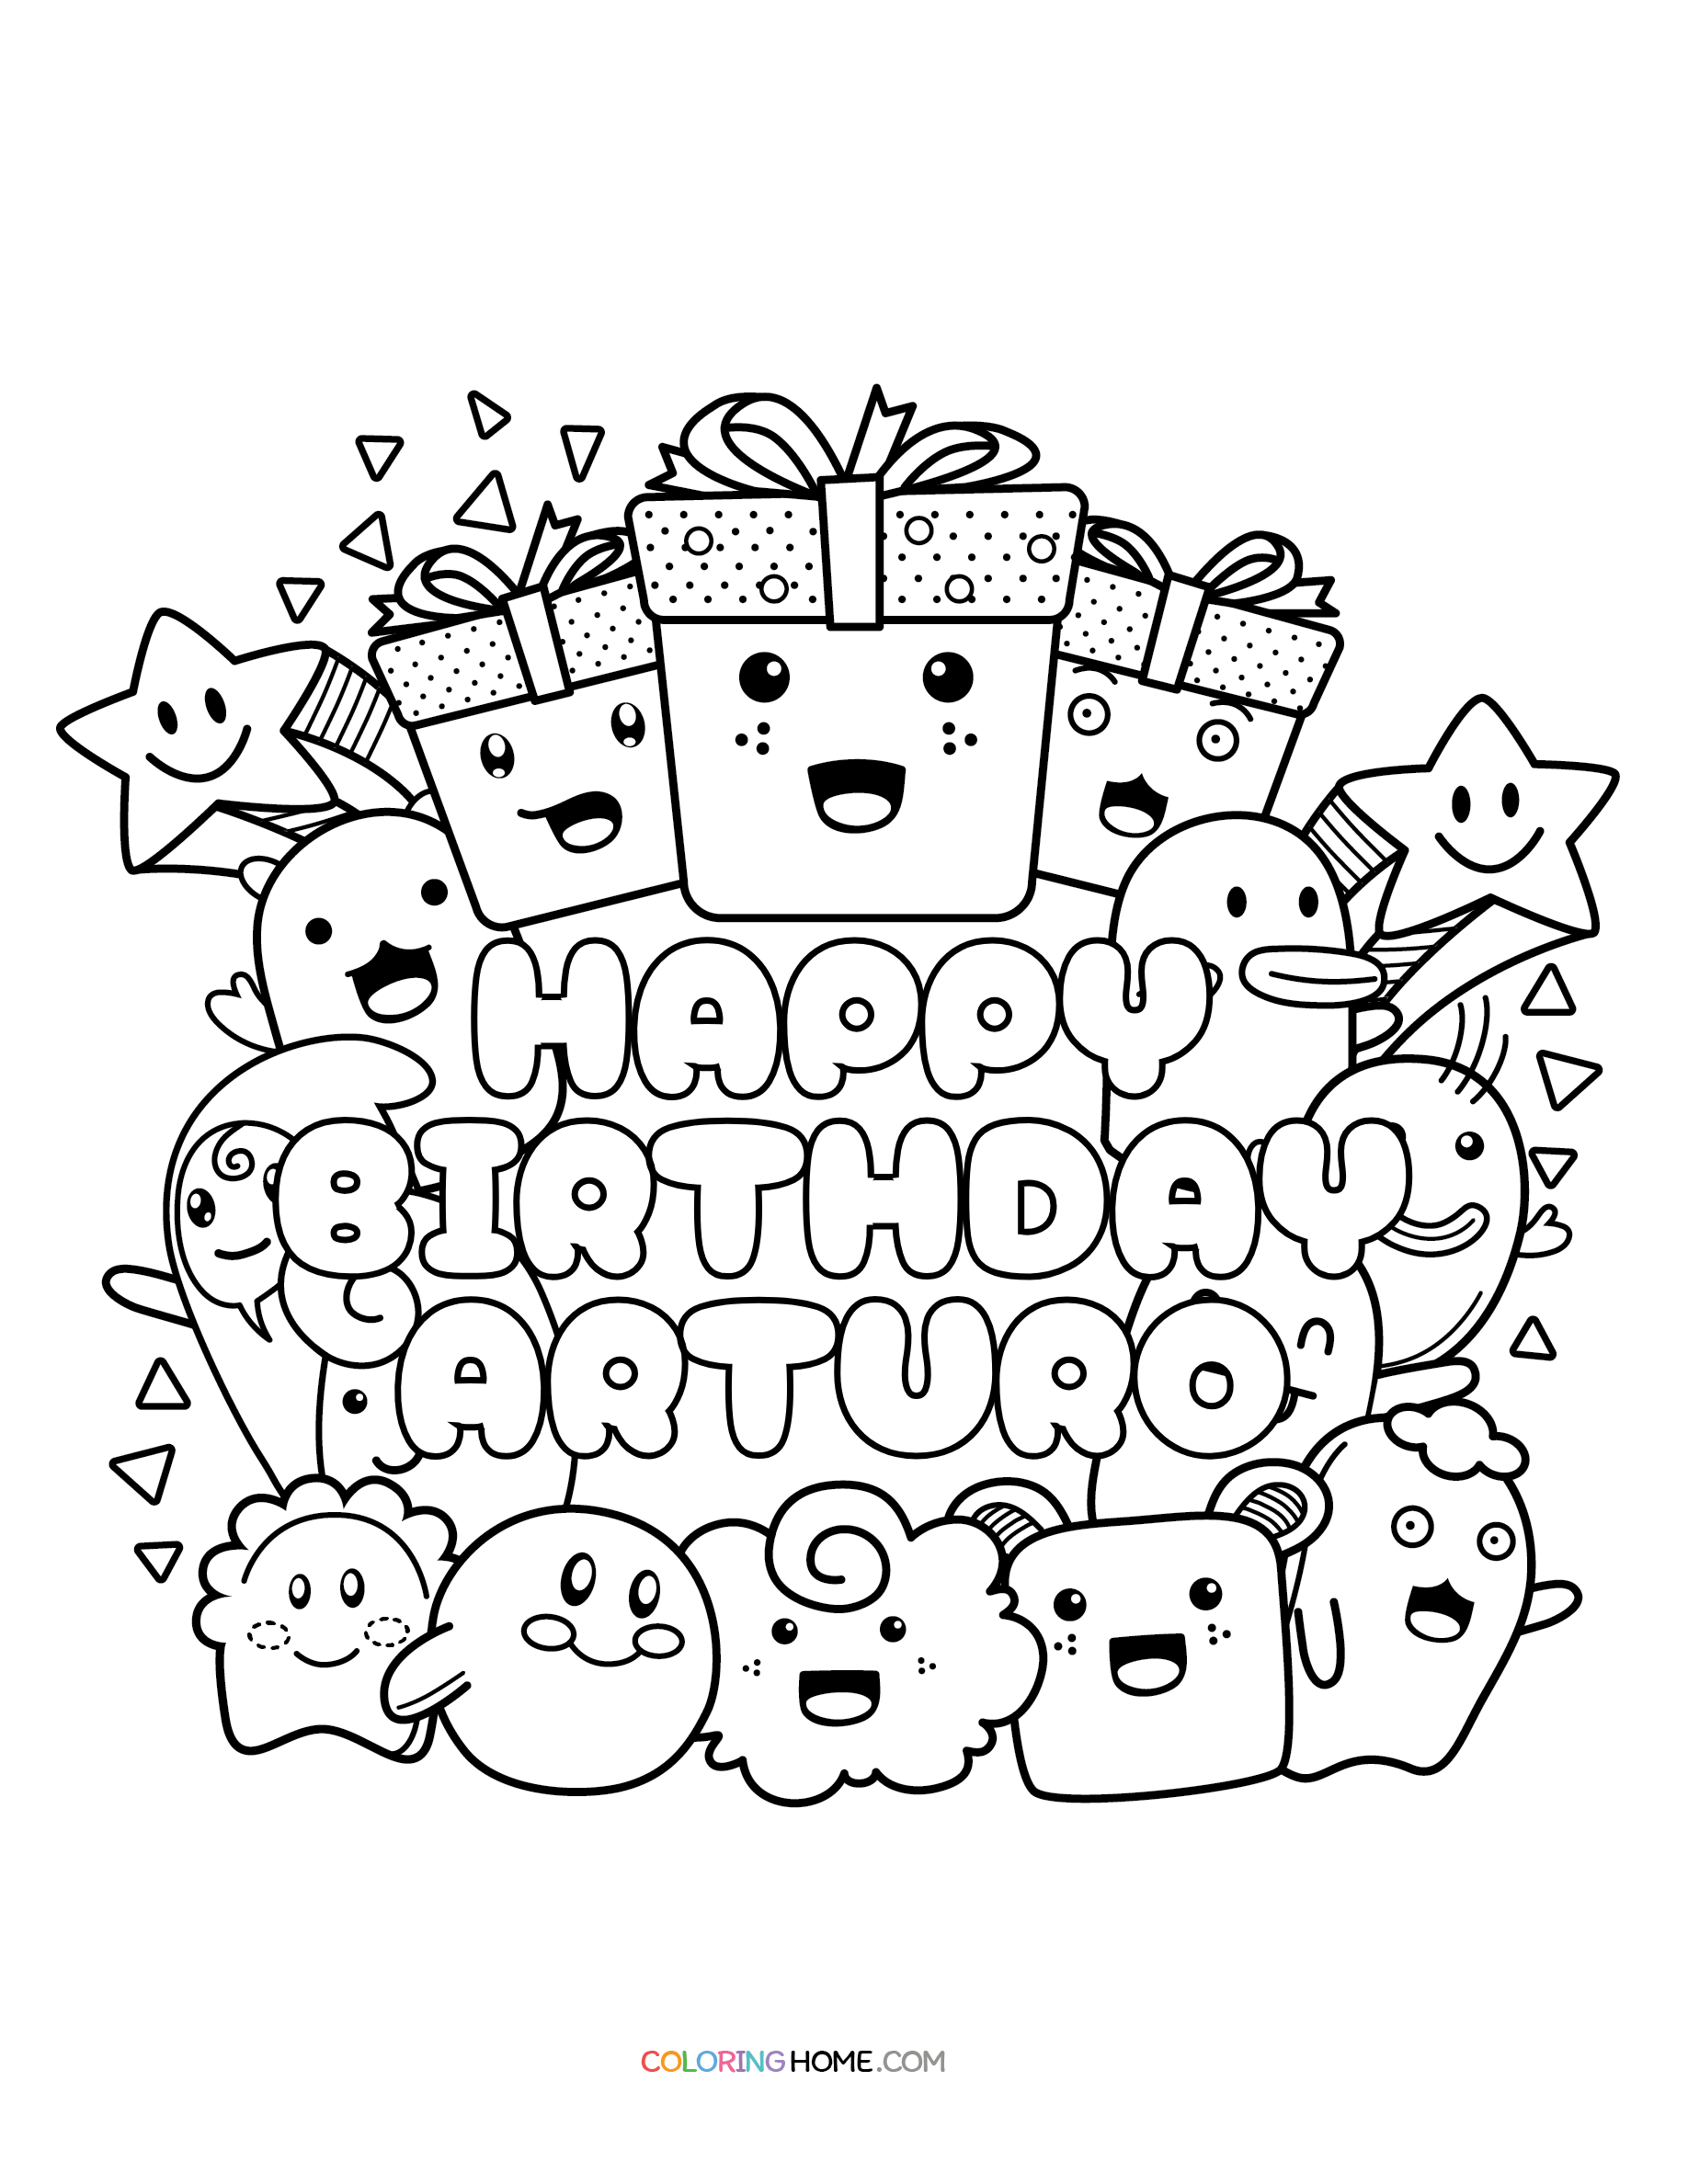 Happy Birthday Arturo coloring page